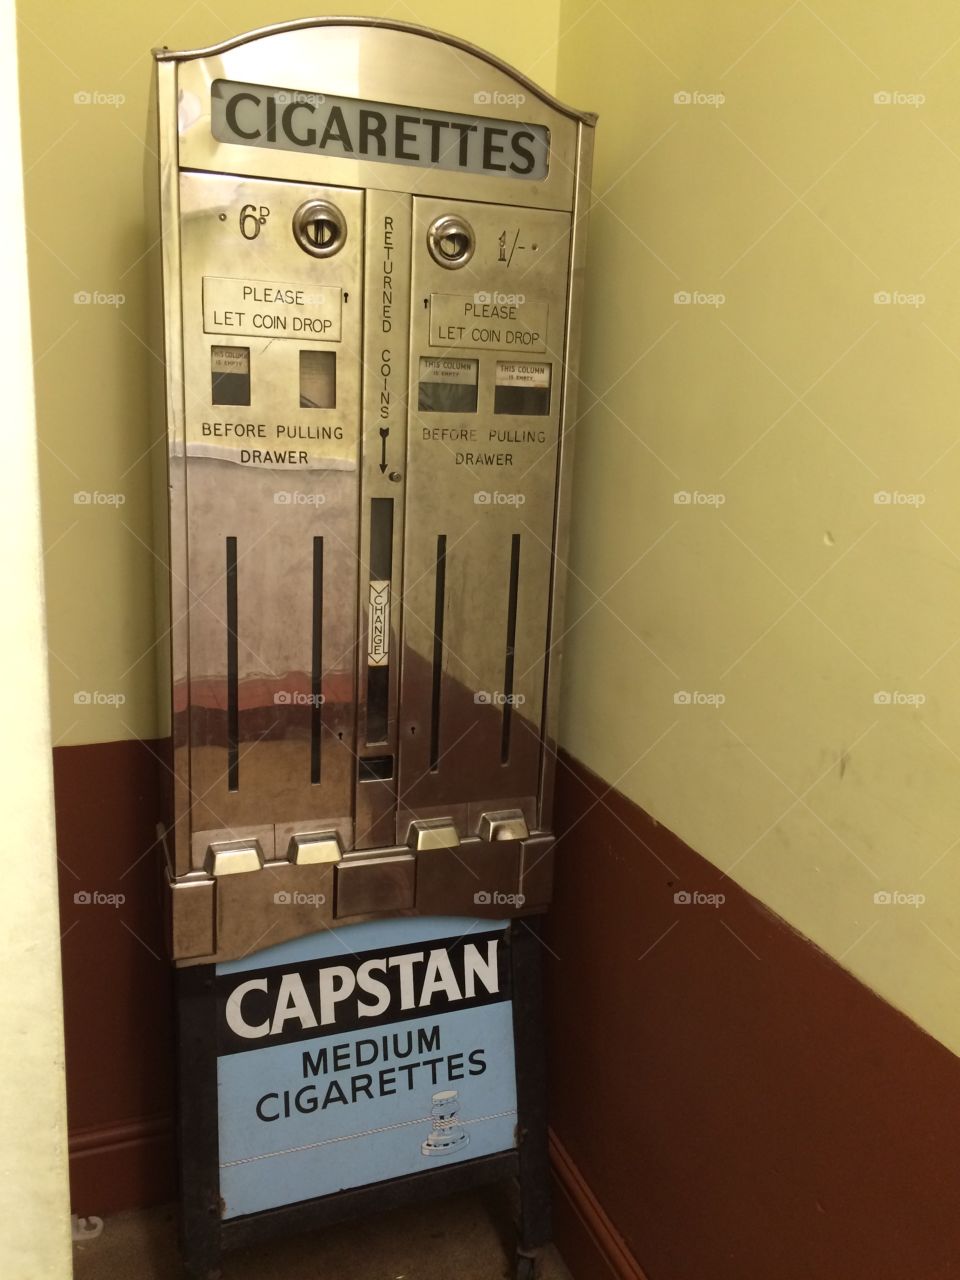 Cigarette machine. Old unused cigarette dispenser